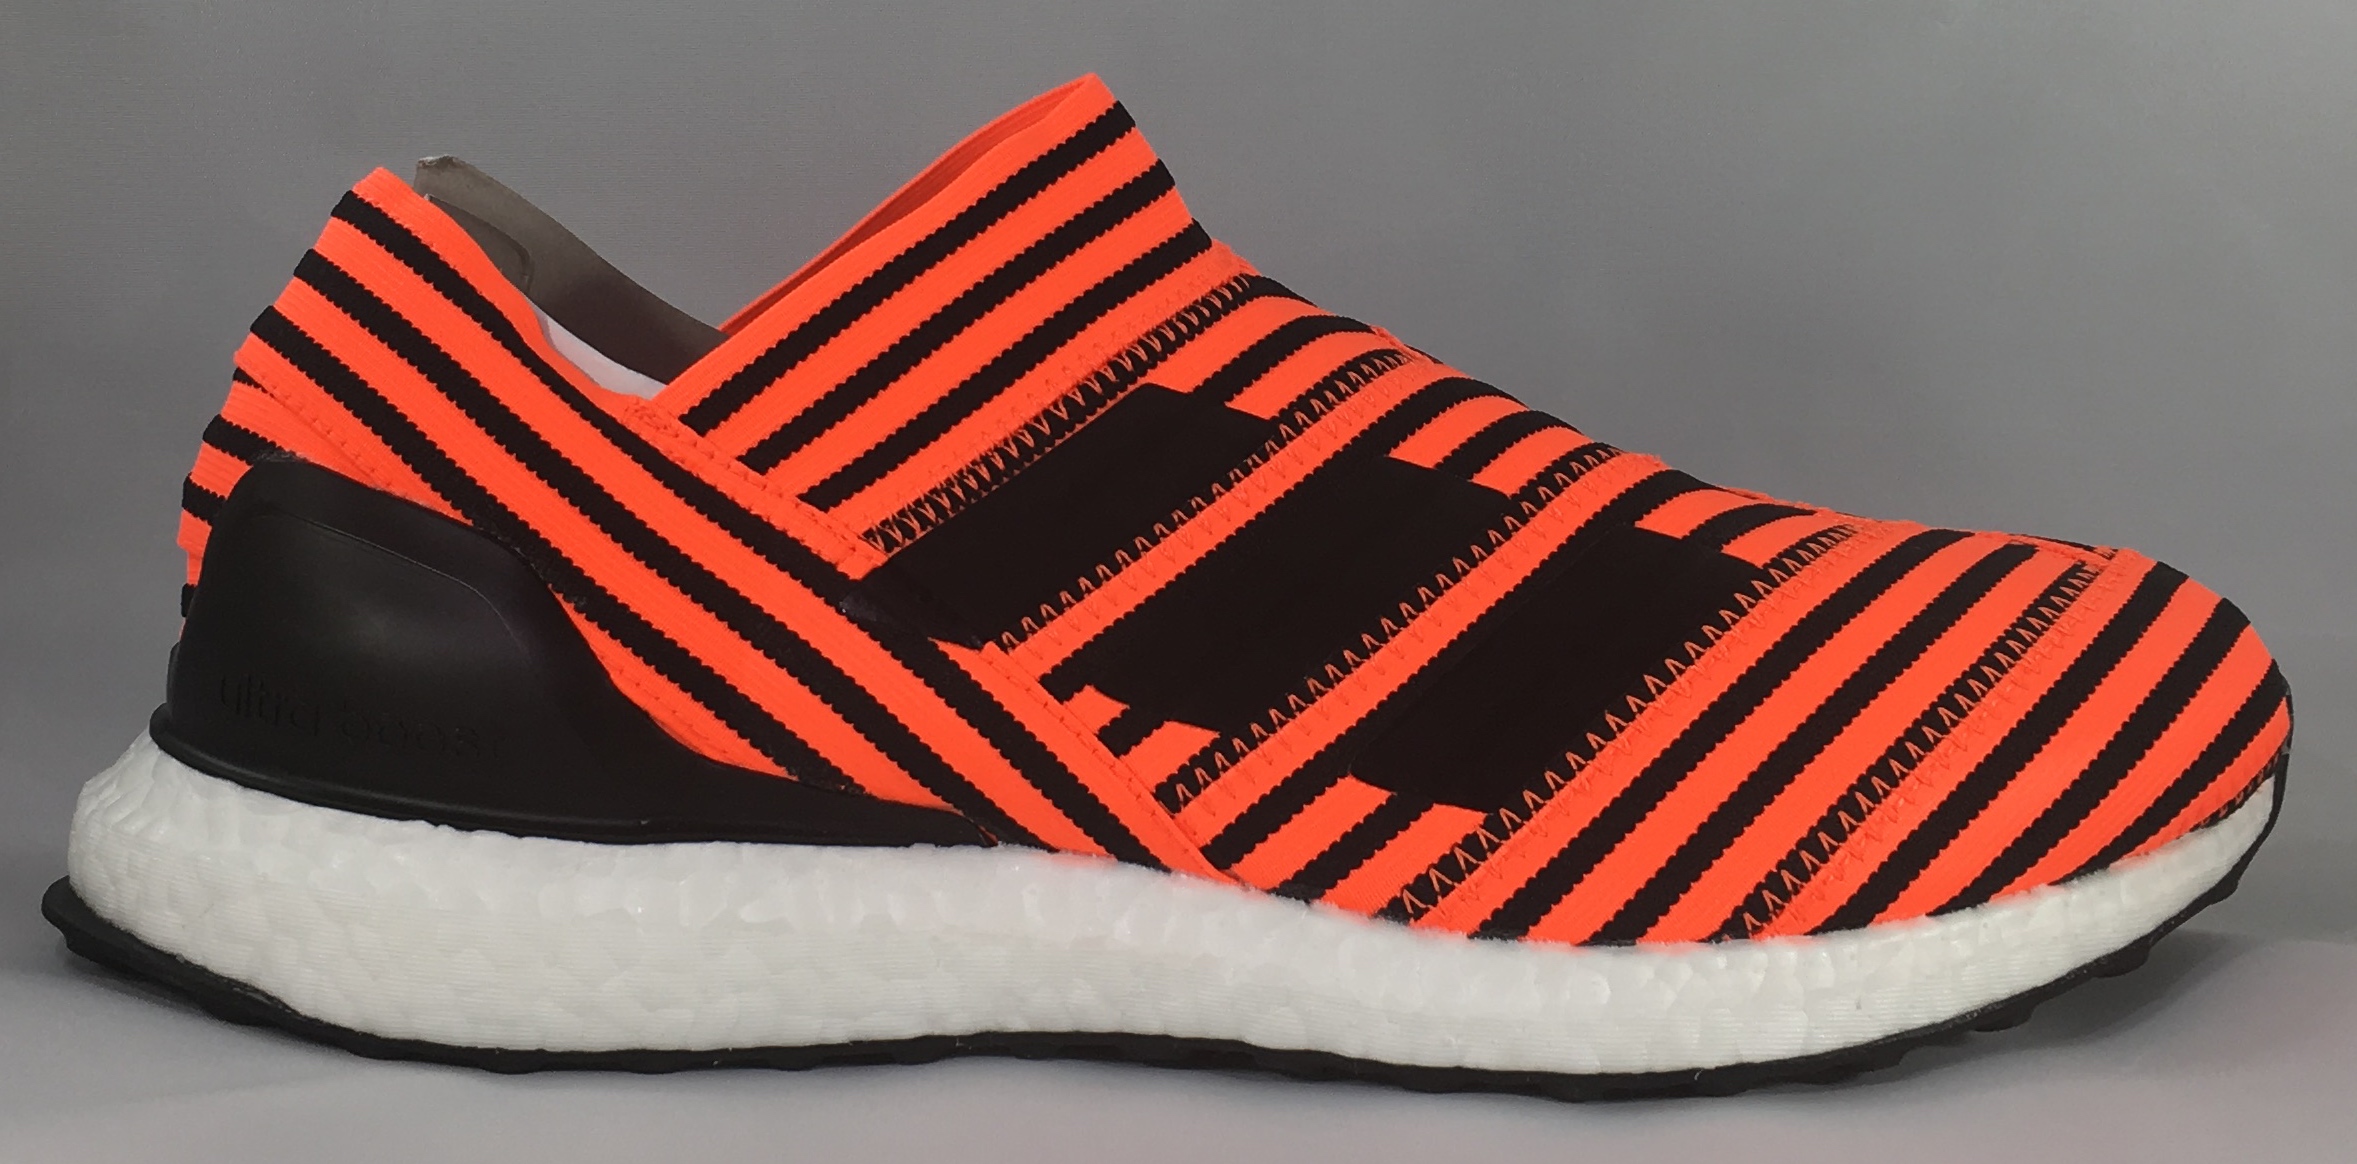 ADIDAS Nemeziz Tango 17+ - Sneakers ADIDAS Air Jordan Nike | Salt Lake Kicks